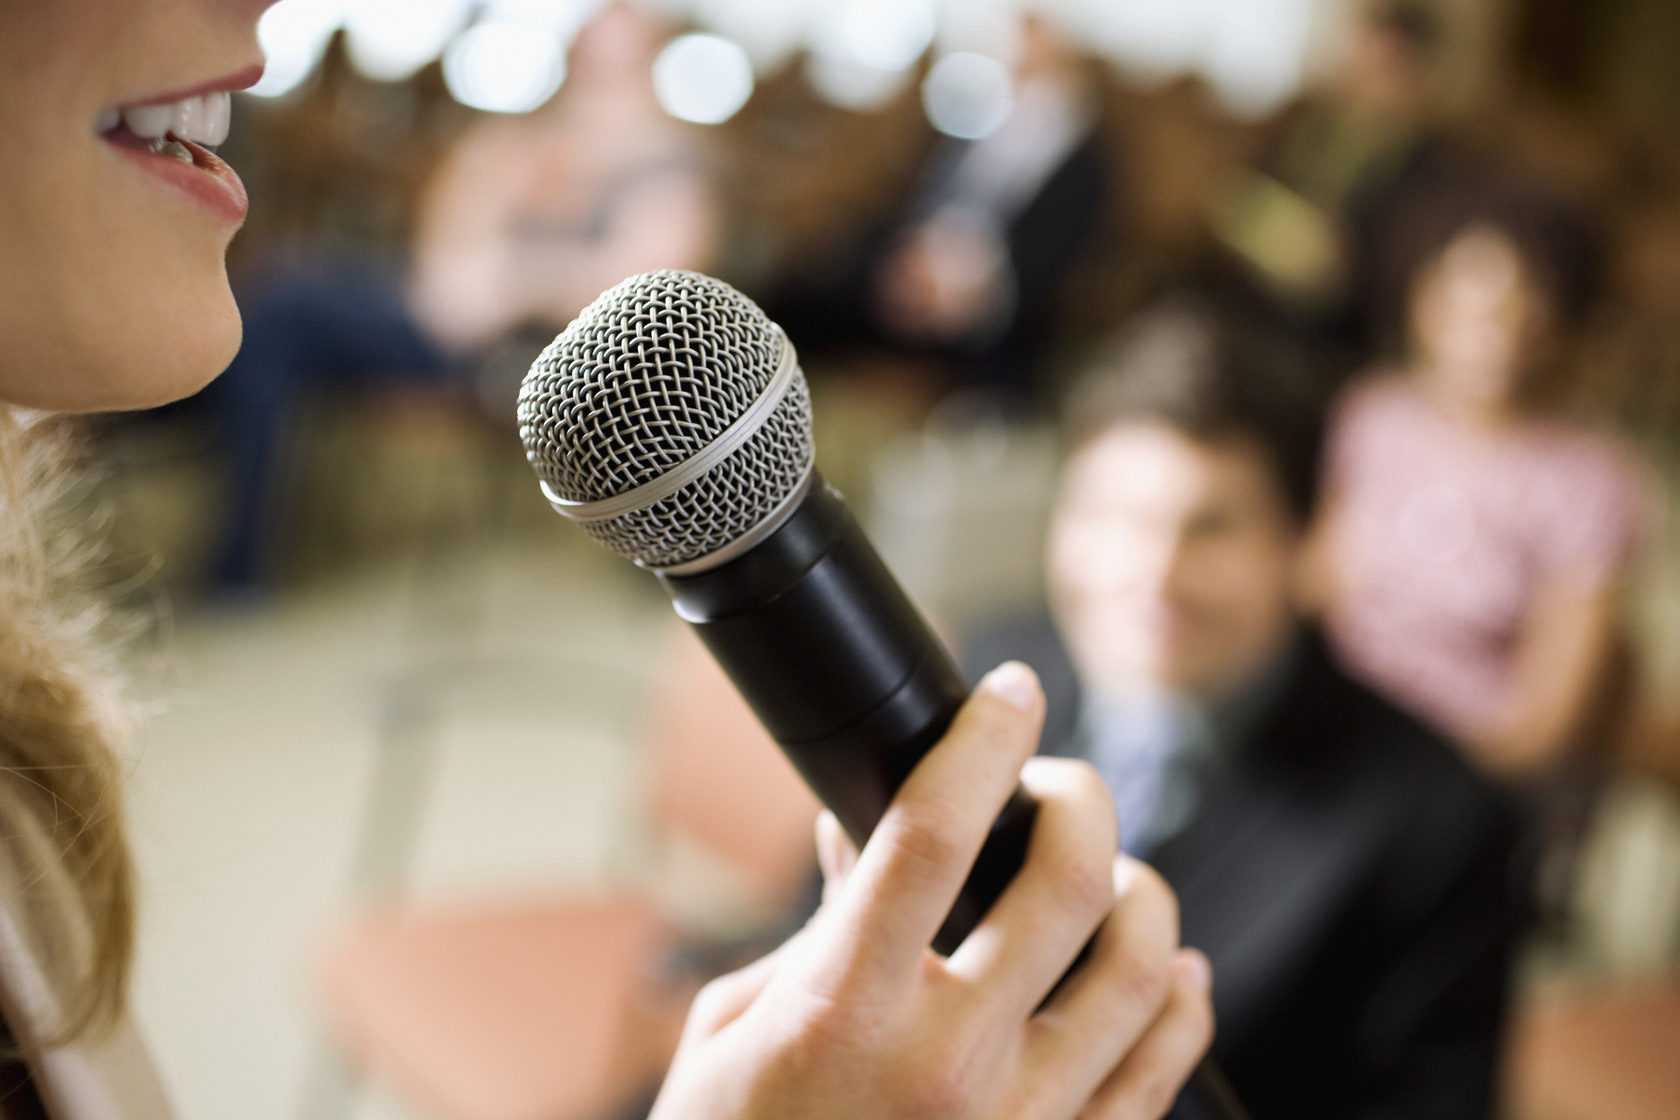 Ораторское мастерство – это востребованный навык современного человека включенного в социум Умение красиво говорить требуется не только публичным личностям